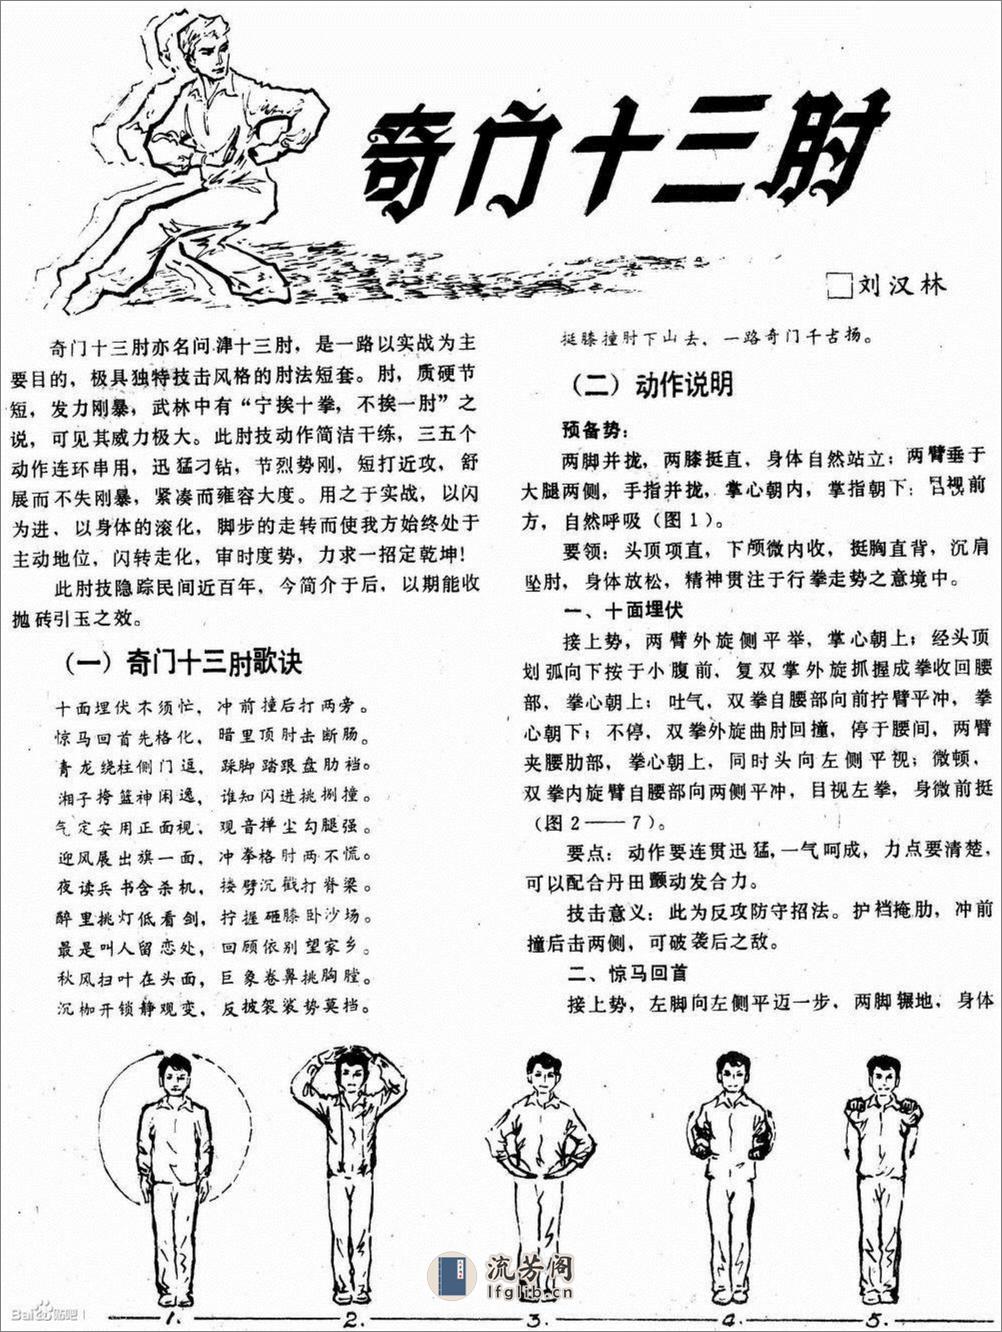 《奇门十三肘》刘汉林 - 第1页预览图